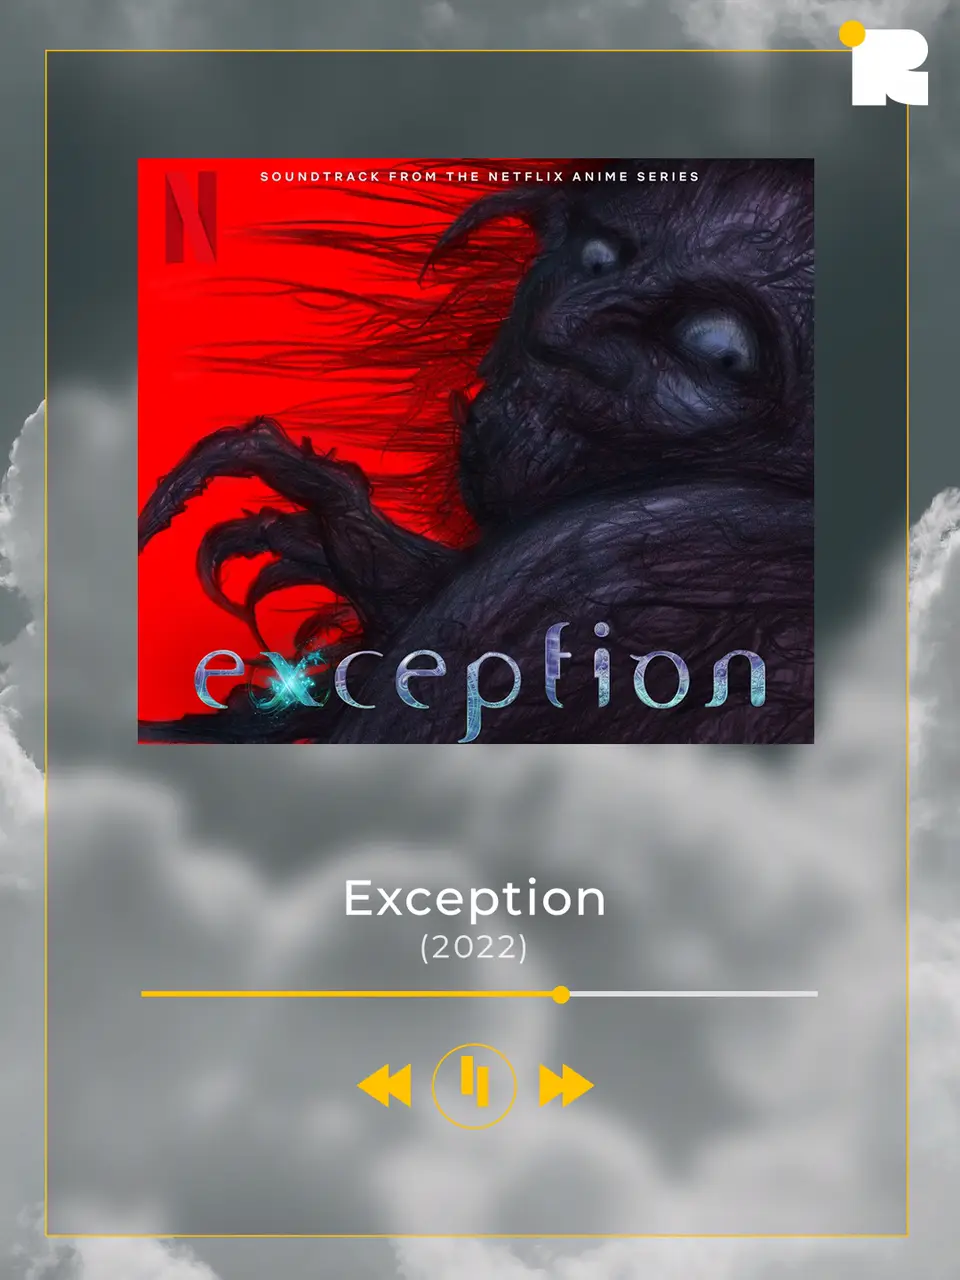 Exception Soundtrack Ryuichi Sakamoto